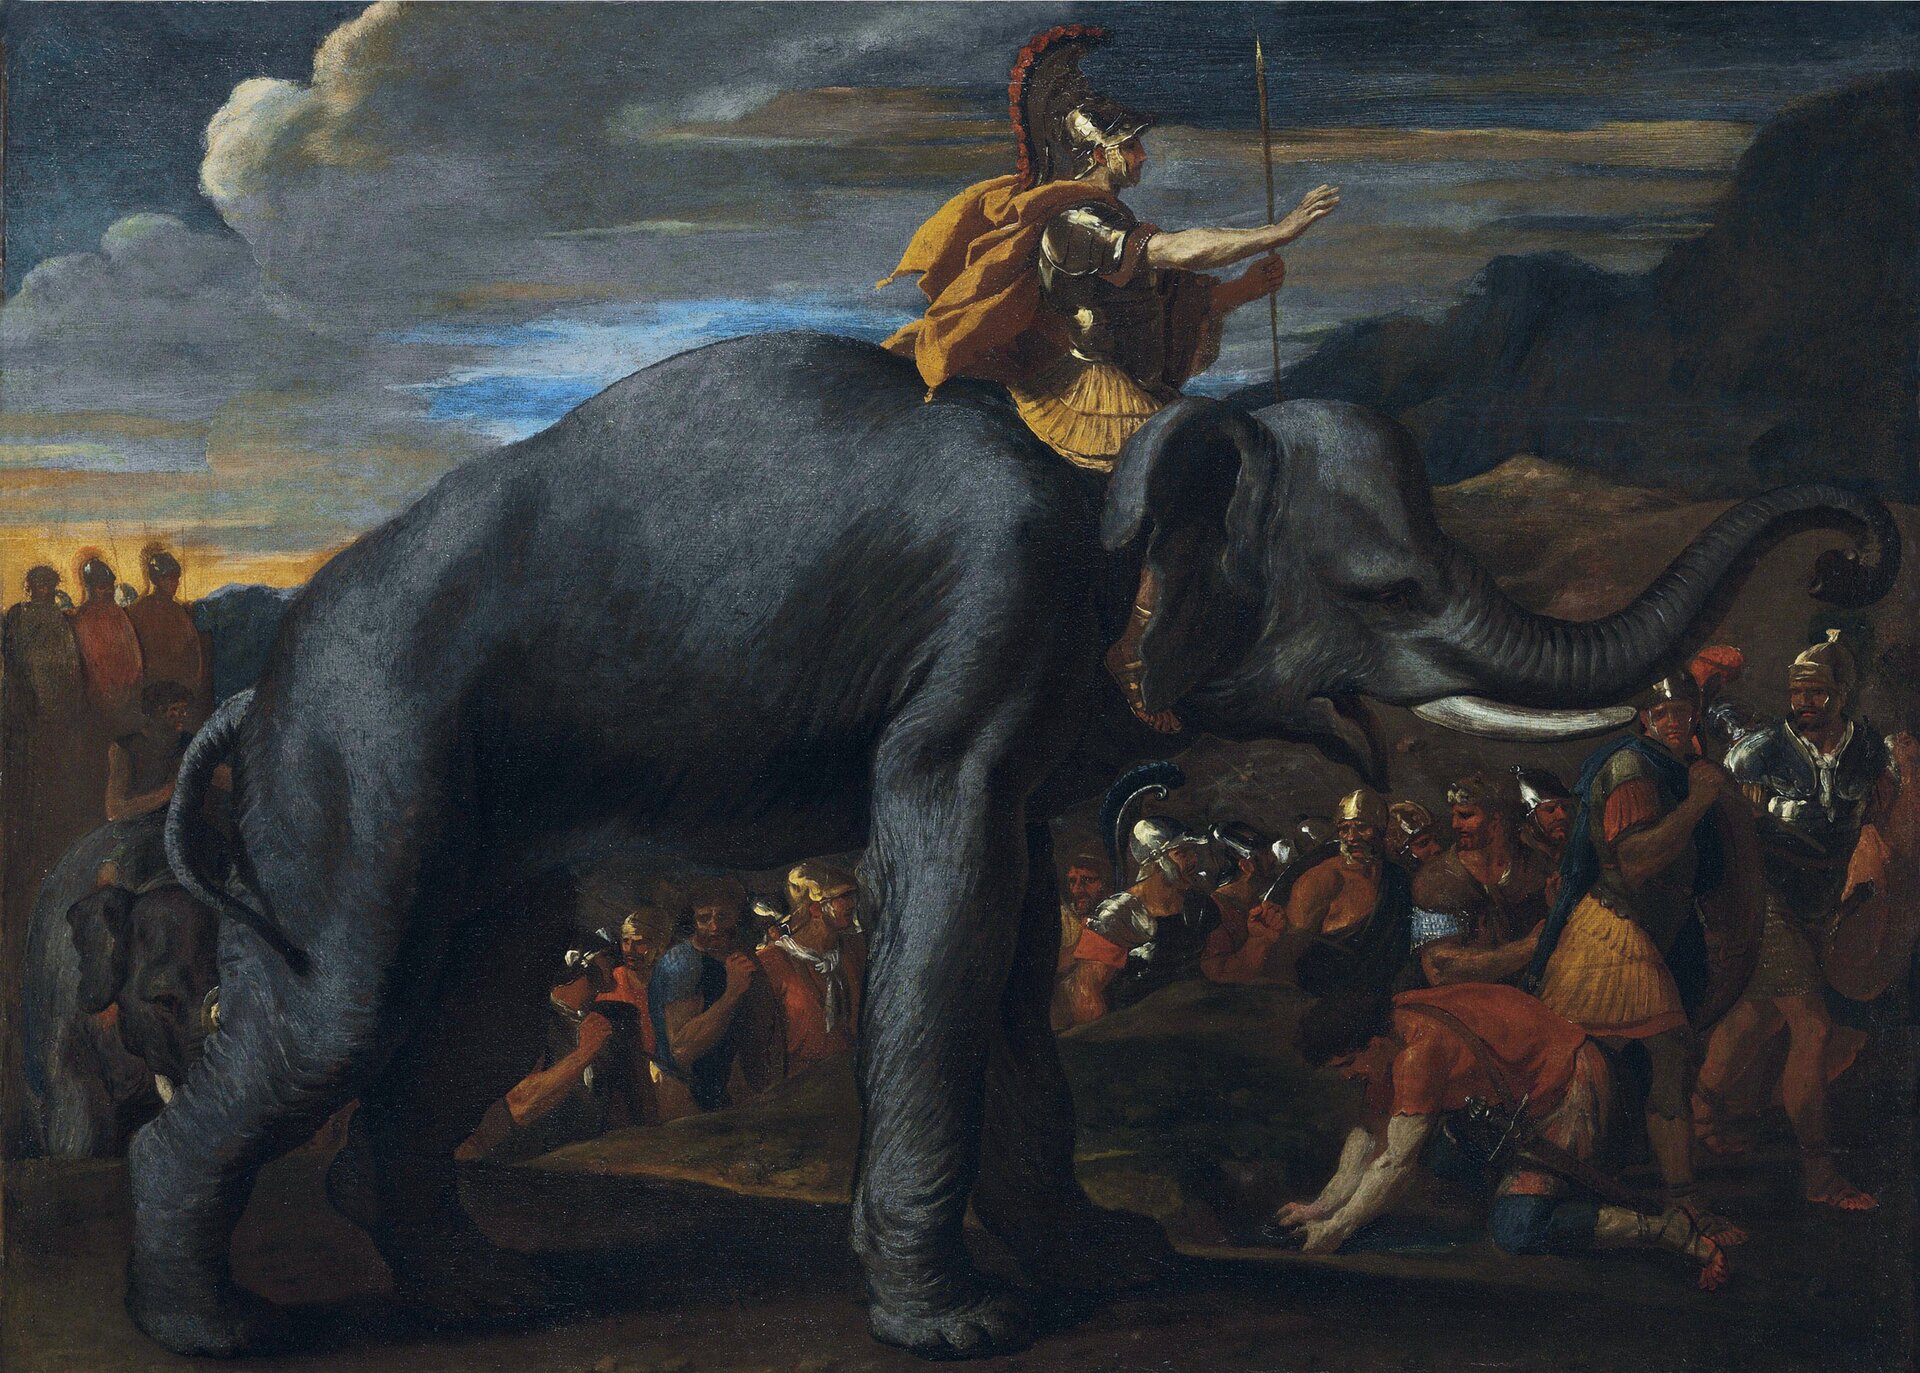 Kolorowy obraz przedstawiający żołnierzy idących do bitwy. Na pierwszym planie żołnierz w złotym hełmie z pióropuszem, z włócznią w dłoni jedzie na szarym słoniu.